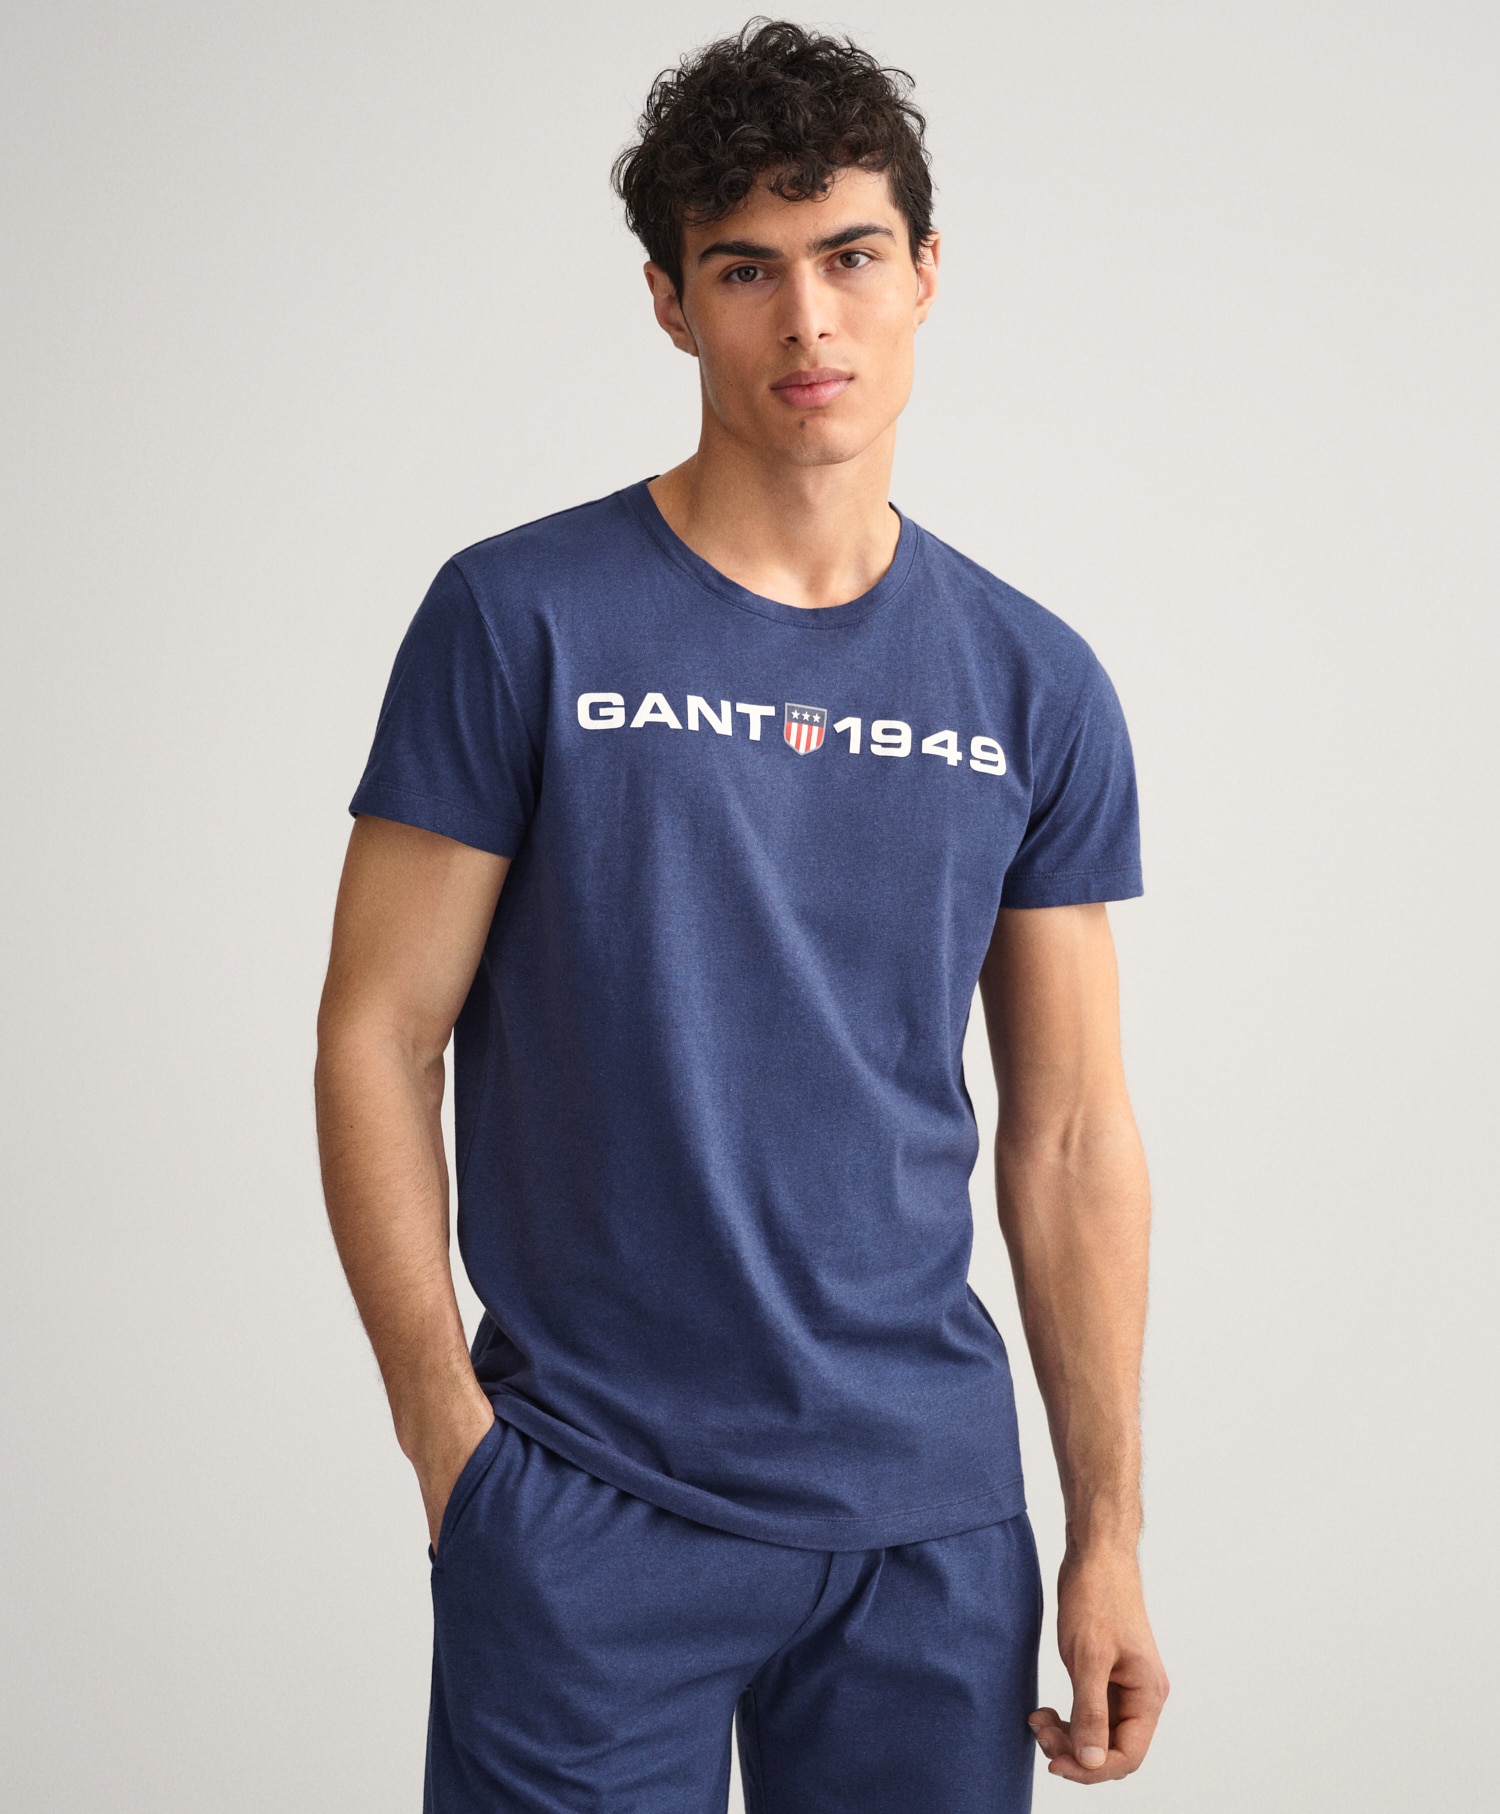 Gant Retro Shield T-shirt